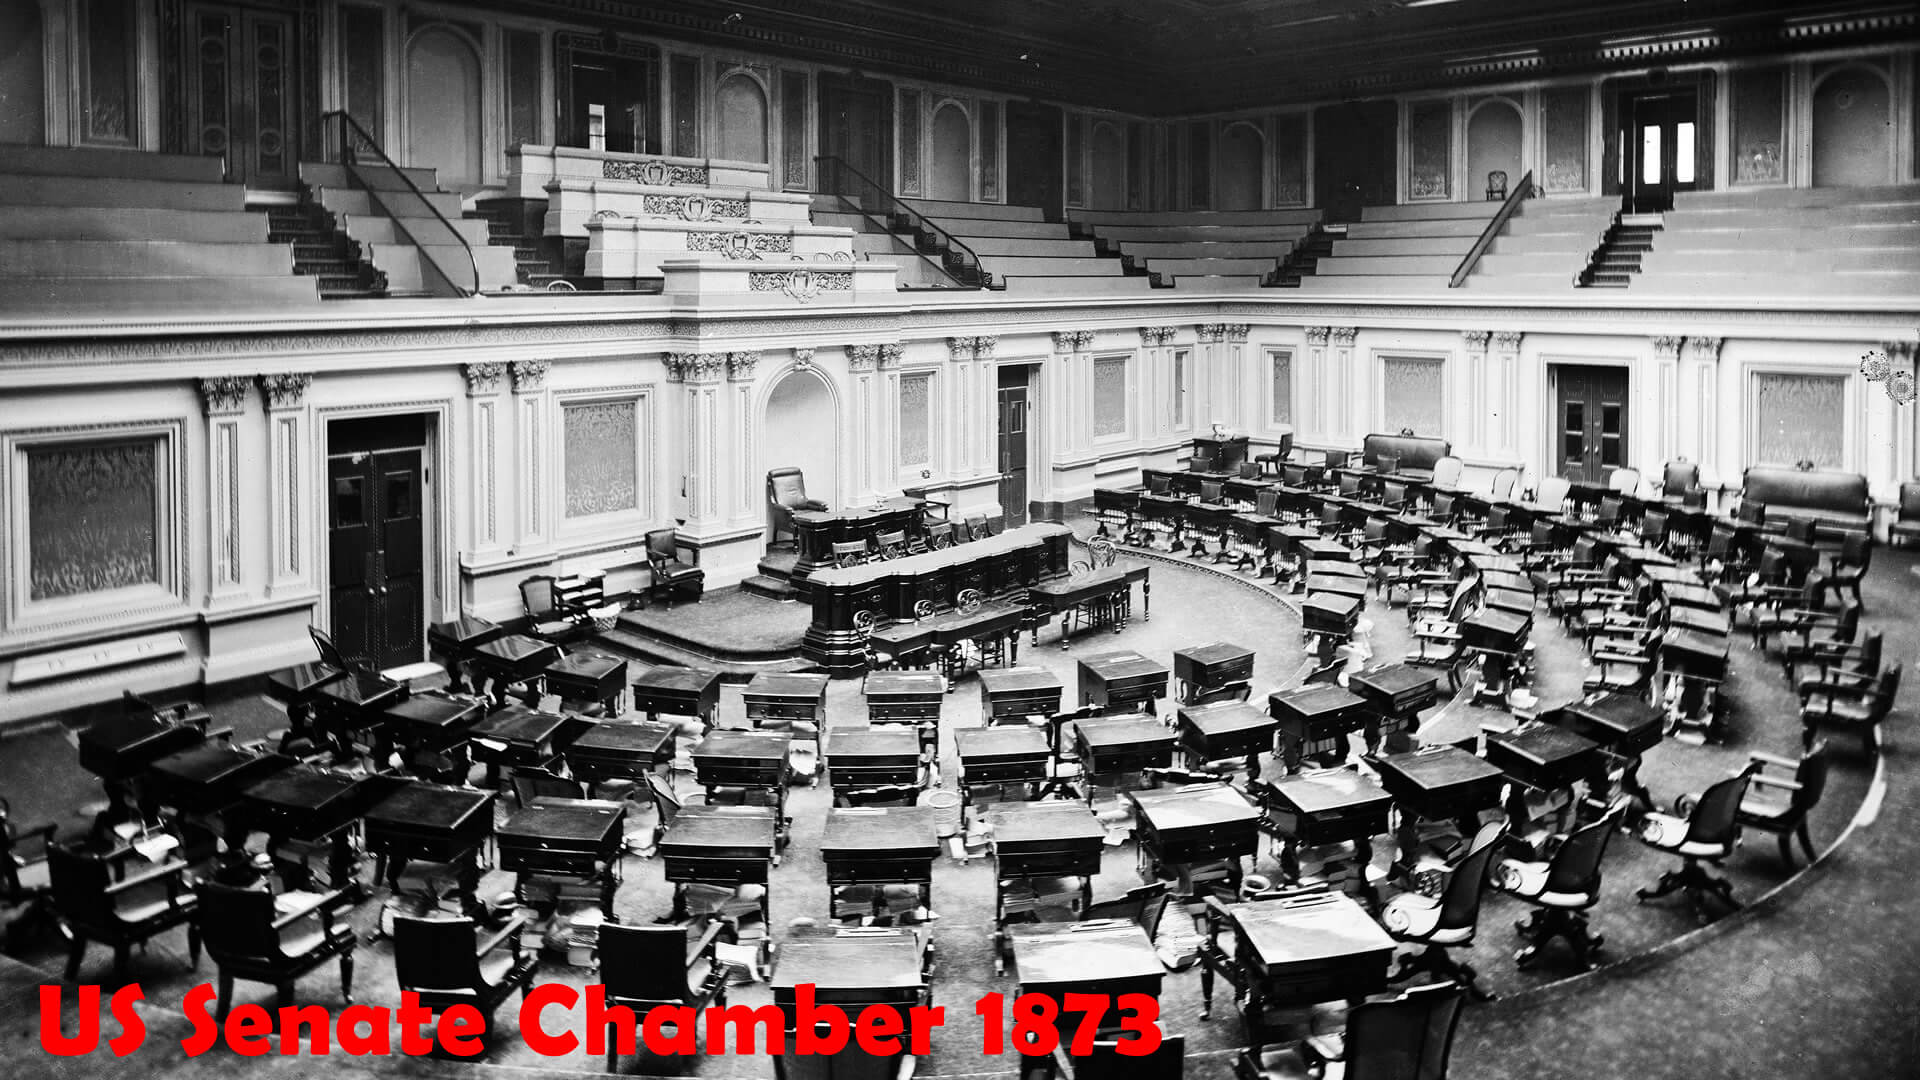 US Senate Chamber 1873